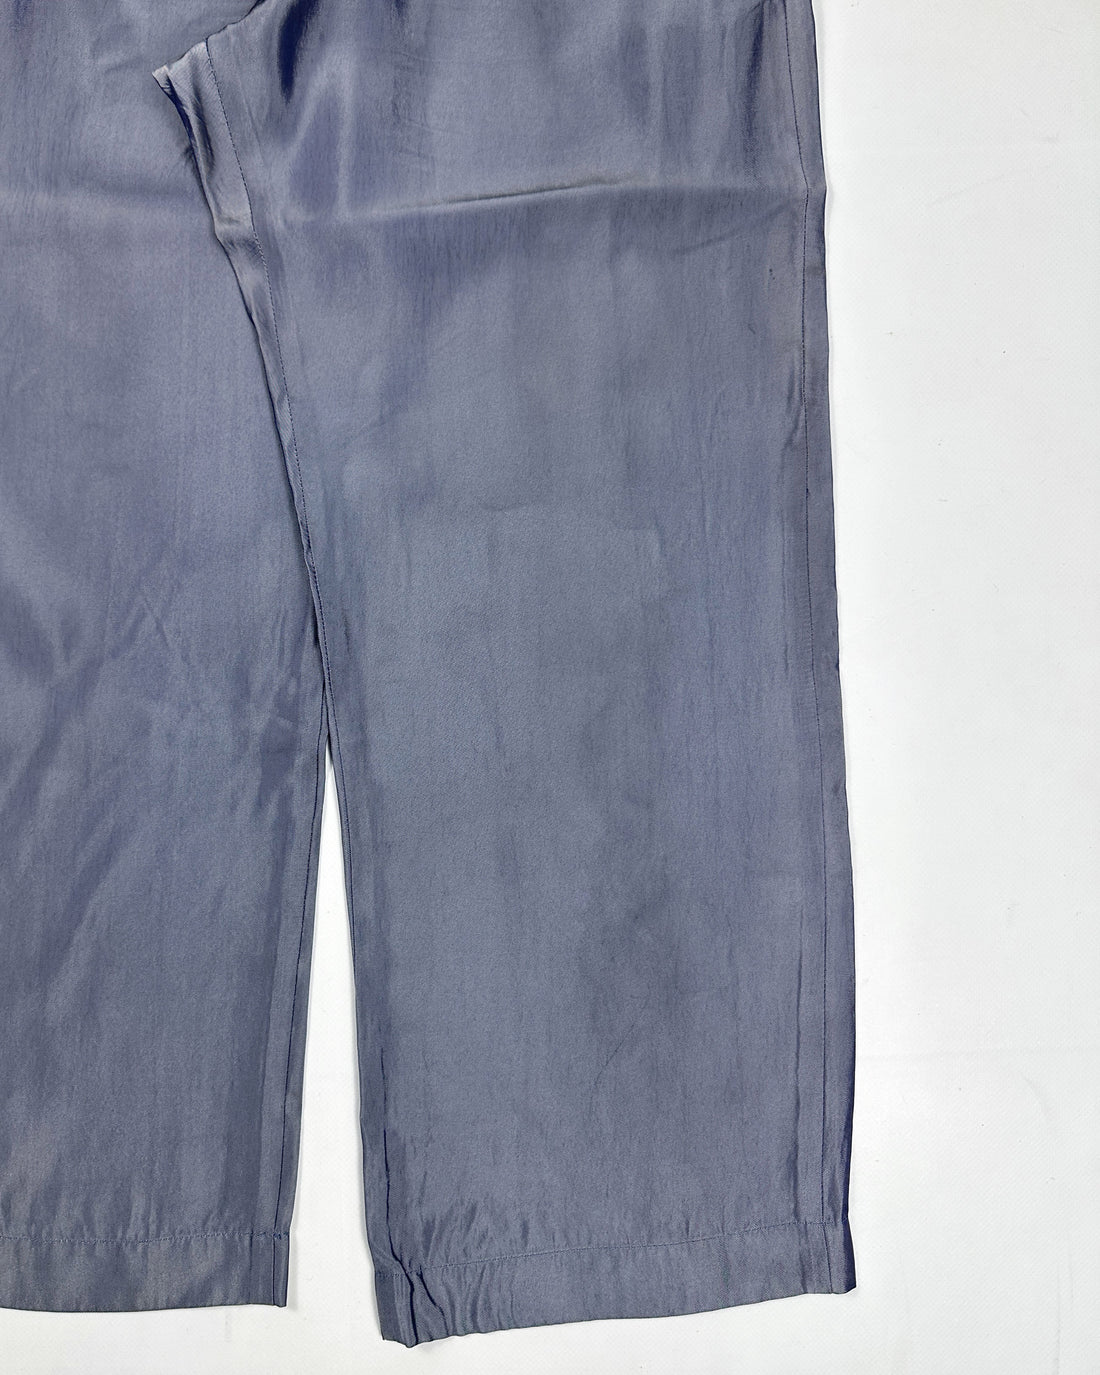 Yohji Yamamoto (Y's) Silver Fluid Pants 2000's